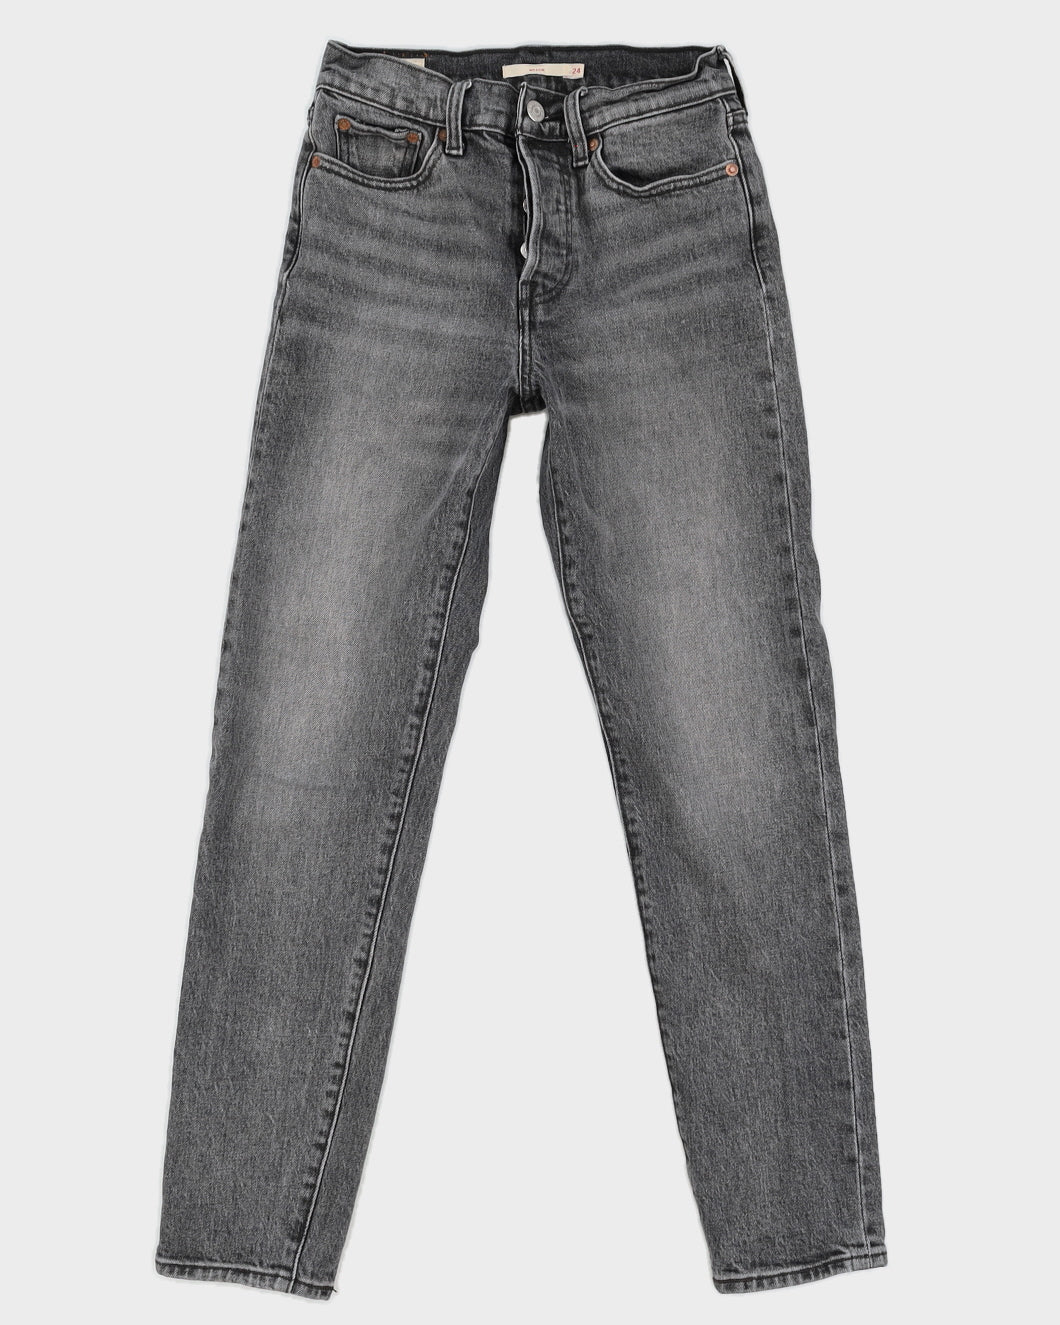 Levi's Grey Wedgie Jeans - W24 L28